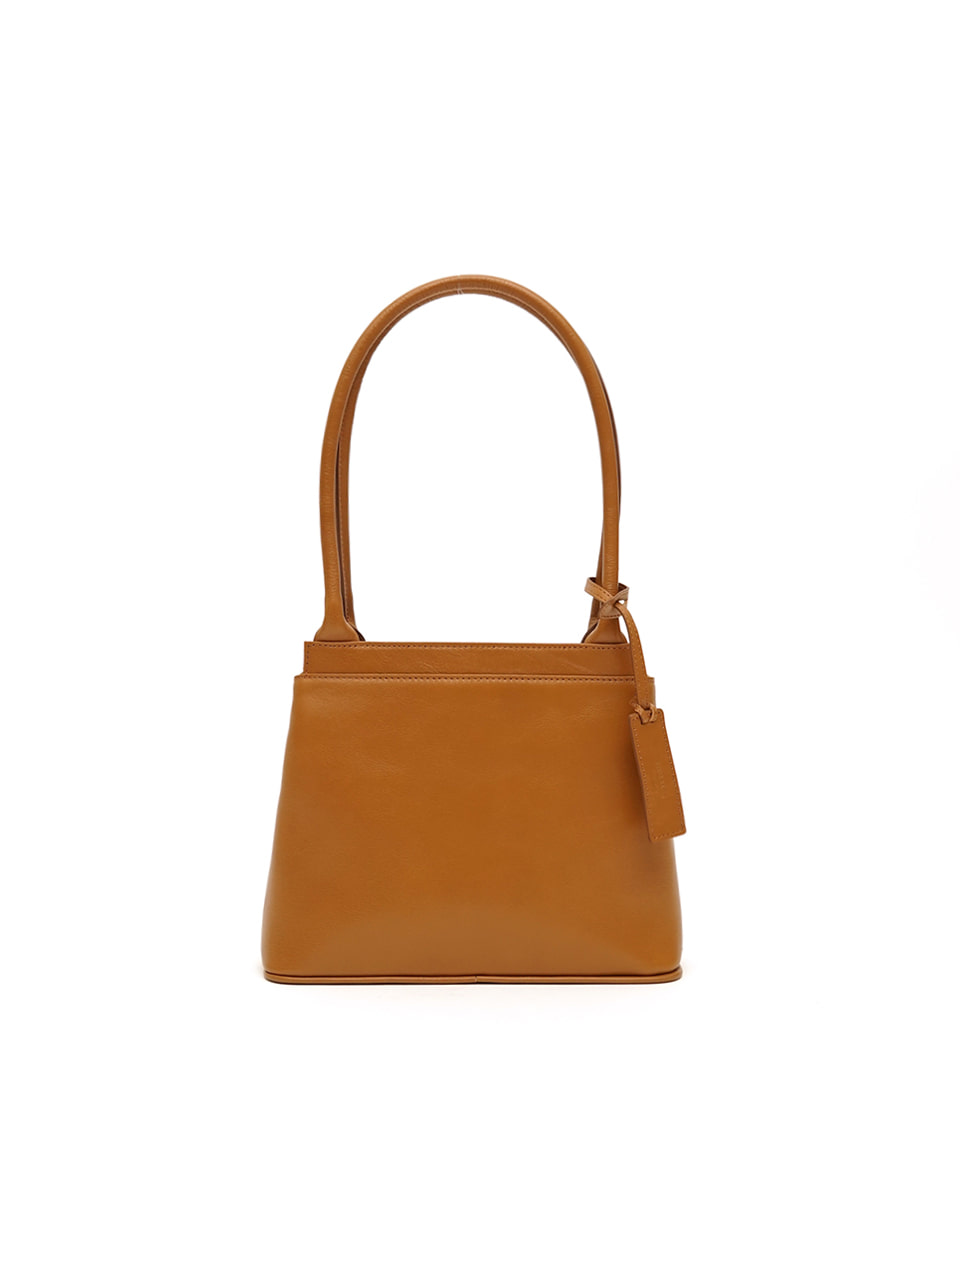 [Spring sale 20% off]  Lano bag / camel